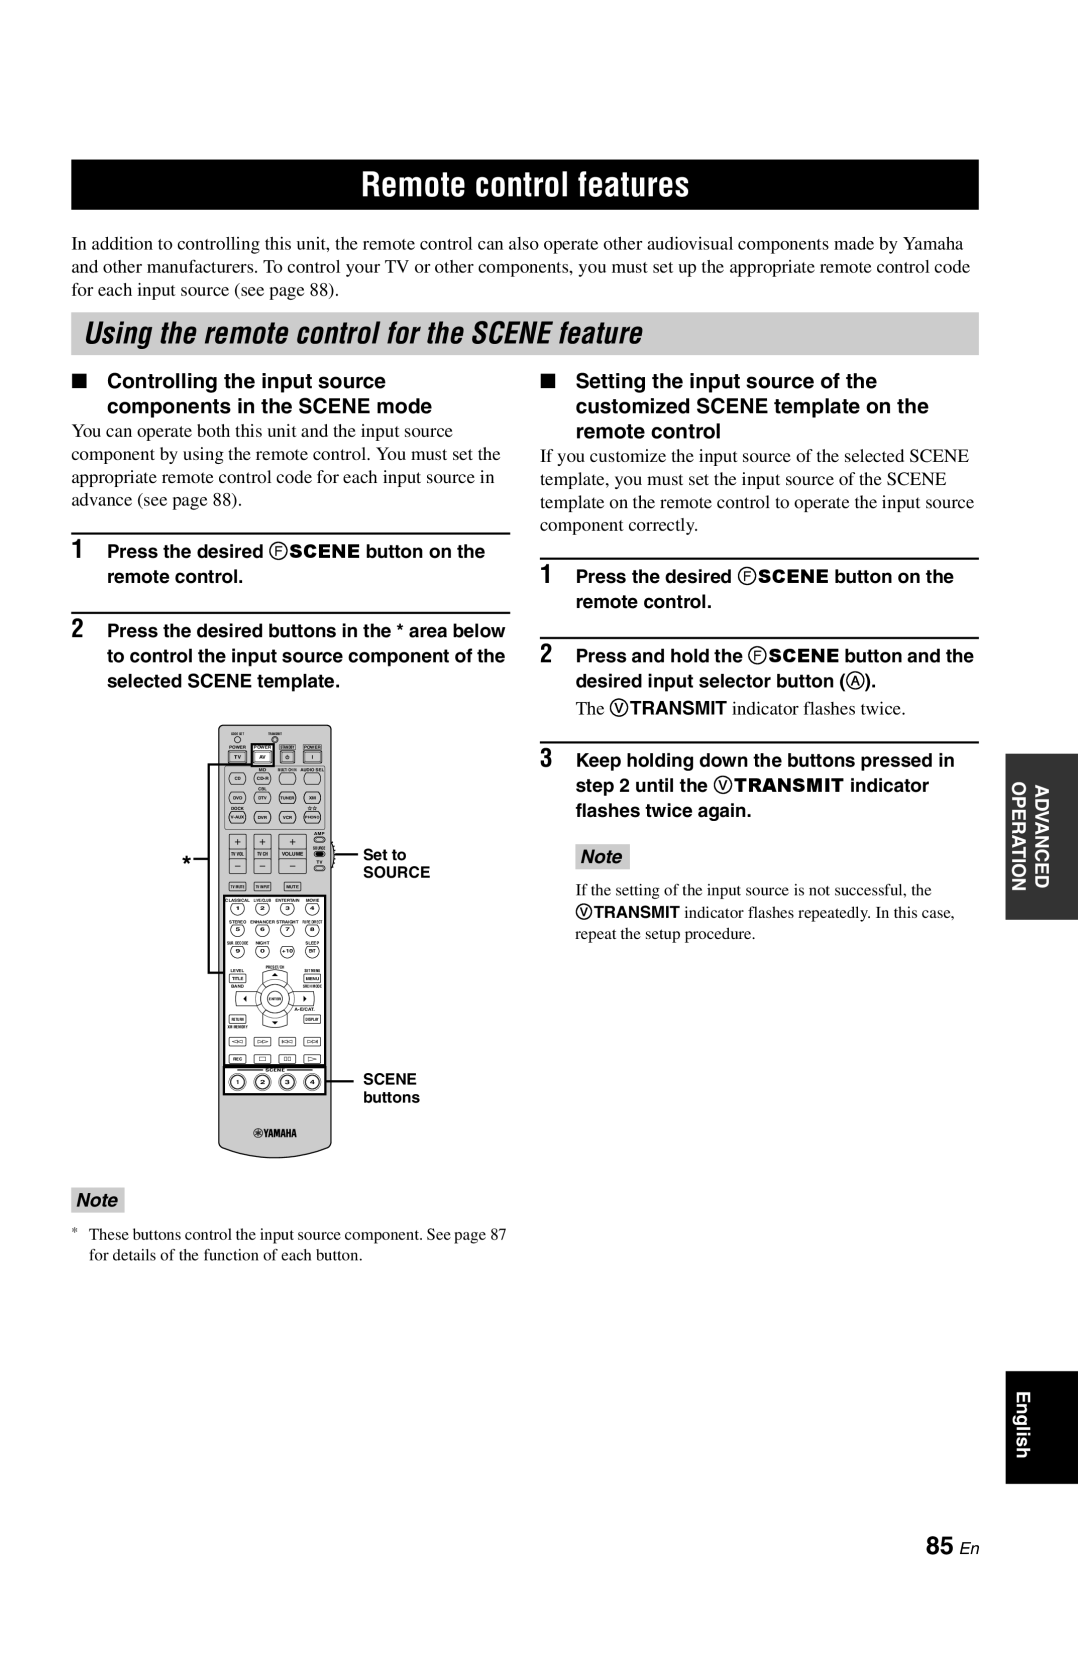 Yamaha RX-V861 owner manual Remote control features, Using the remote control for the SCENE feature, 85 En 